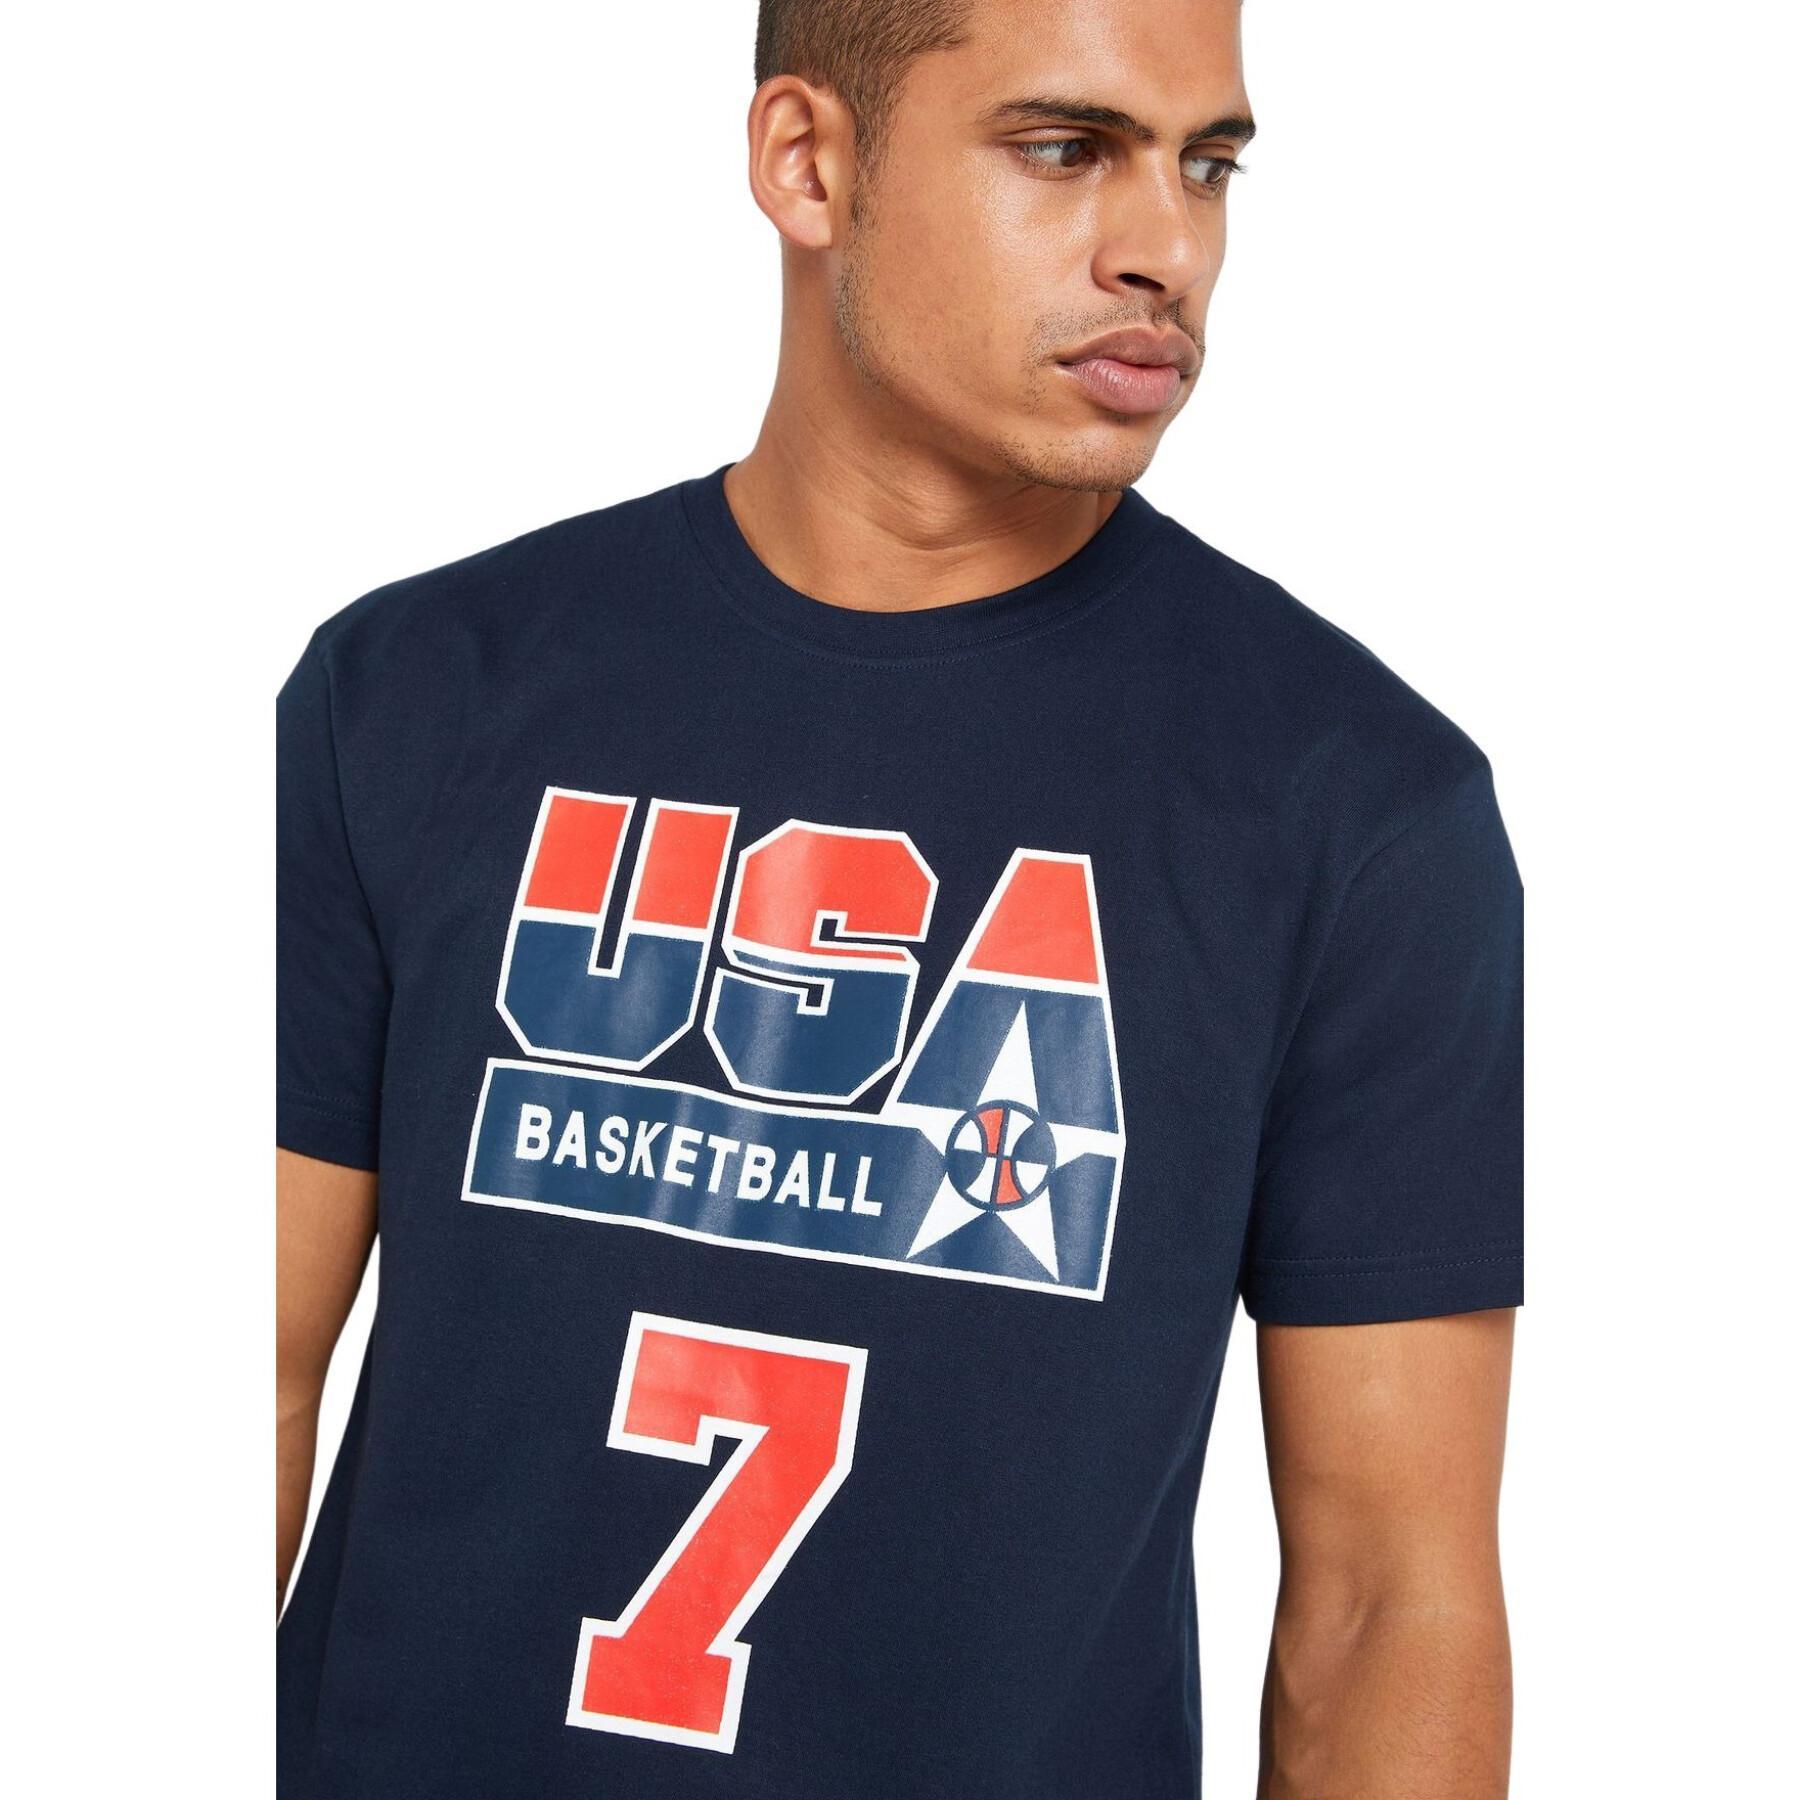 T-shirt USA name & number Larry Bird